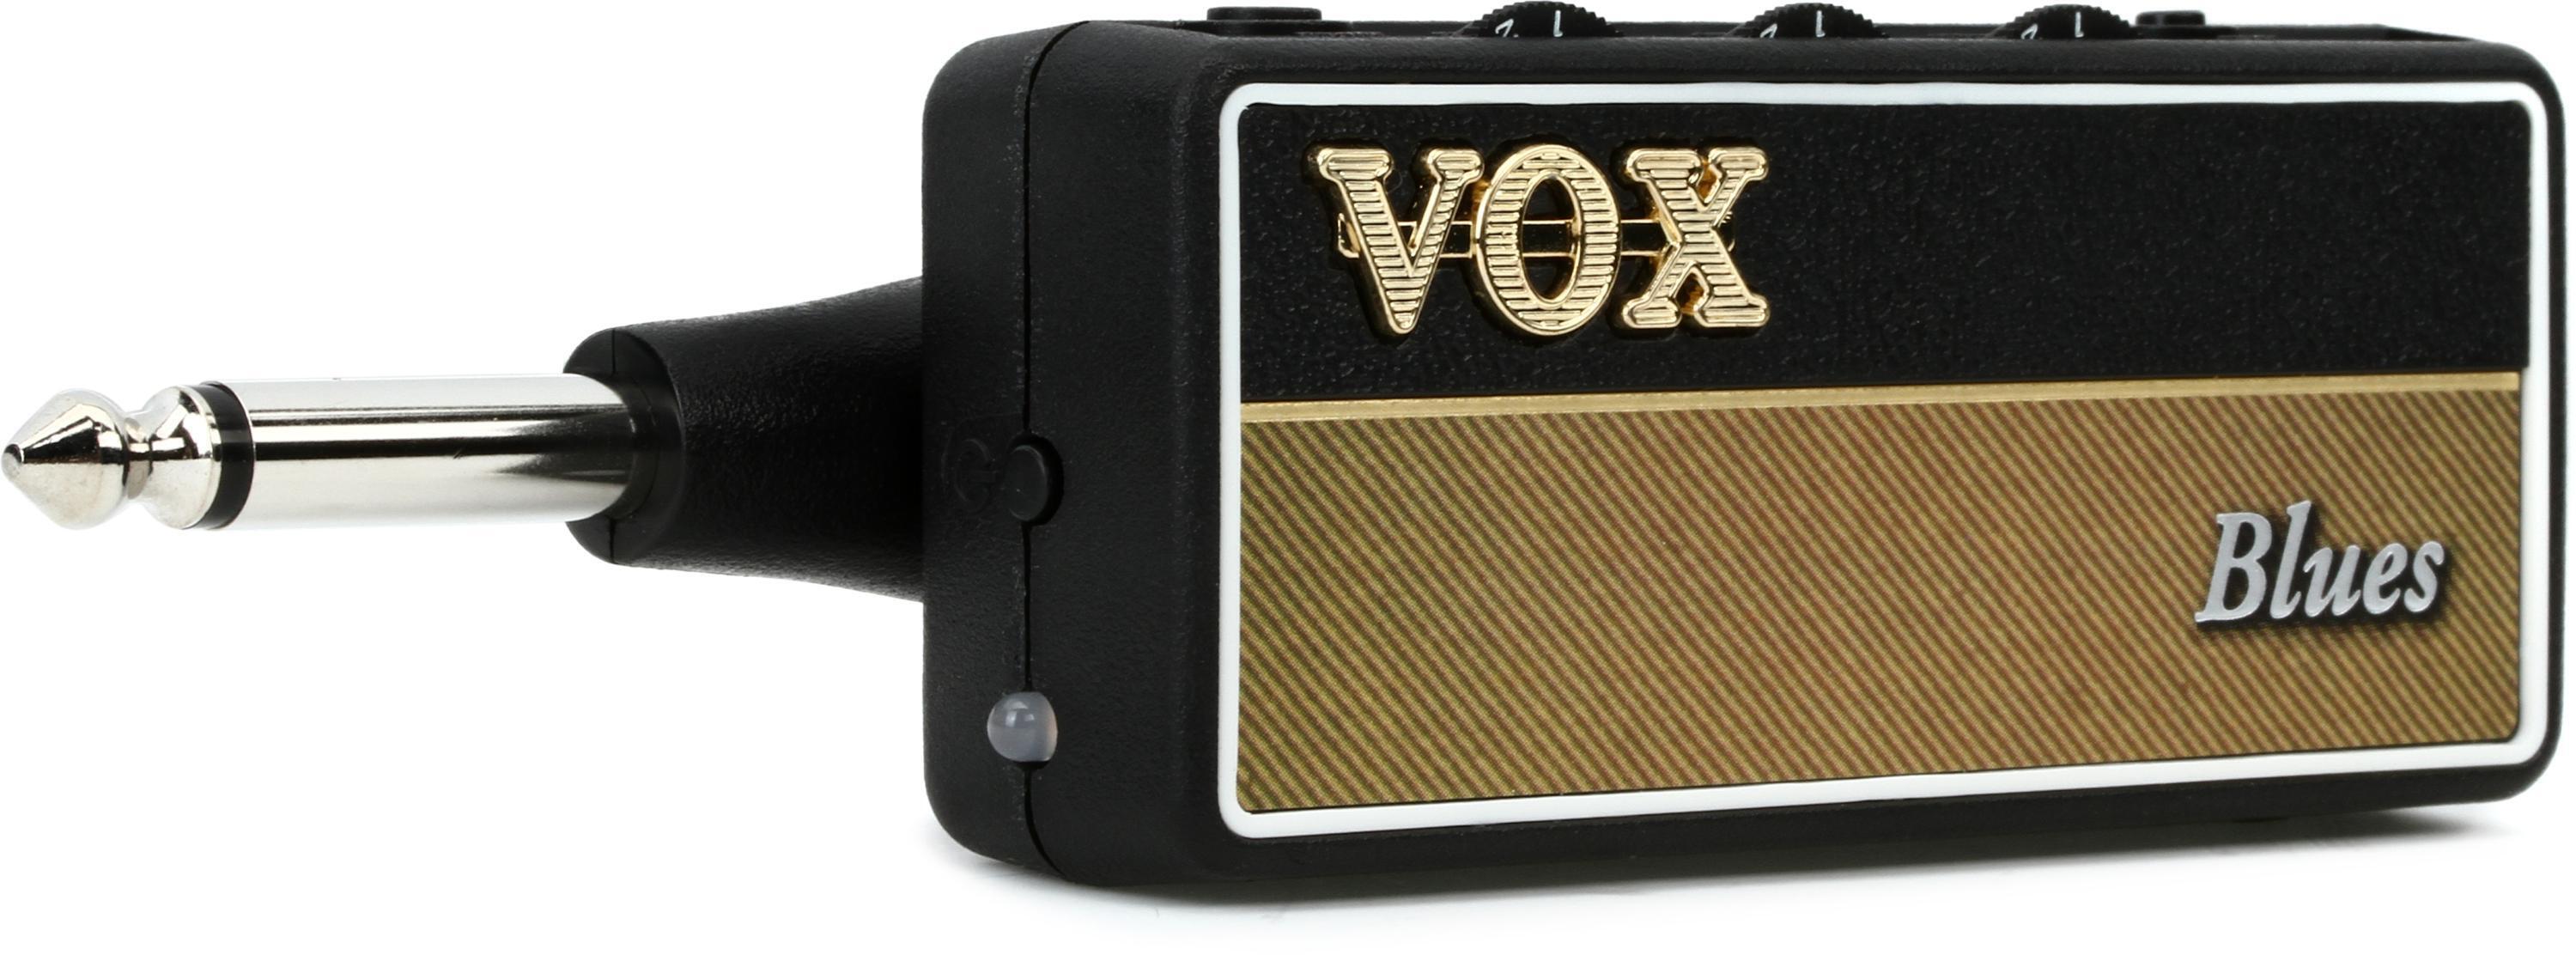 Vox amPlug 2 - AC30 - Five Star Guitars